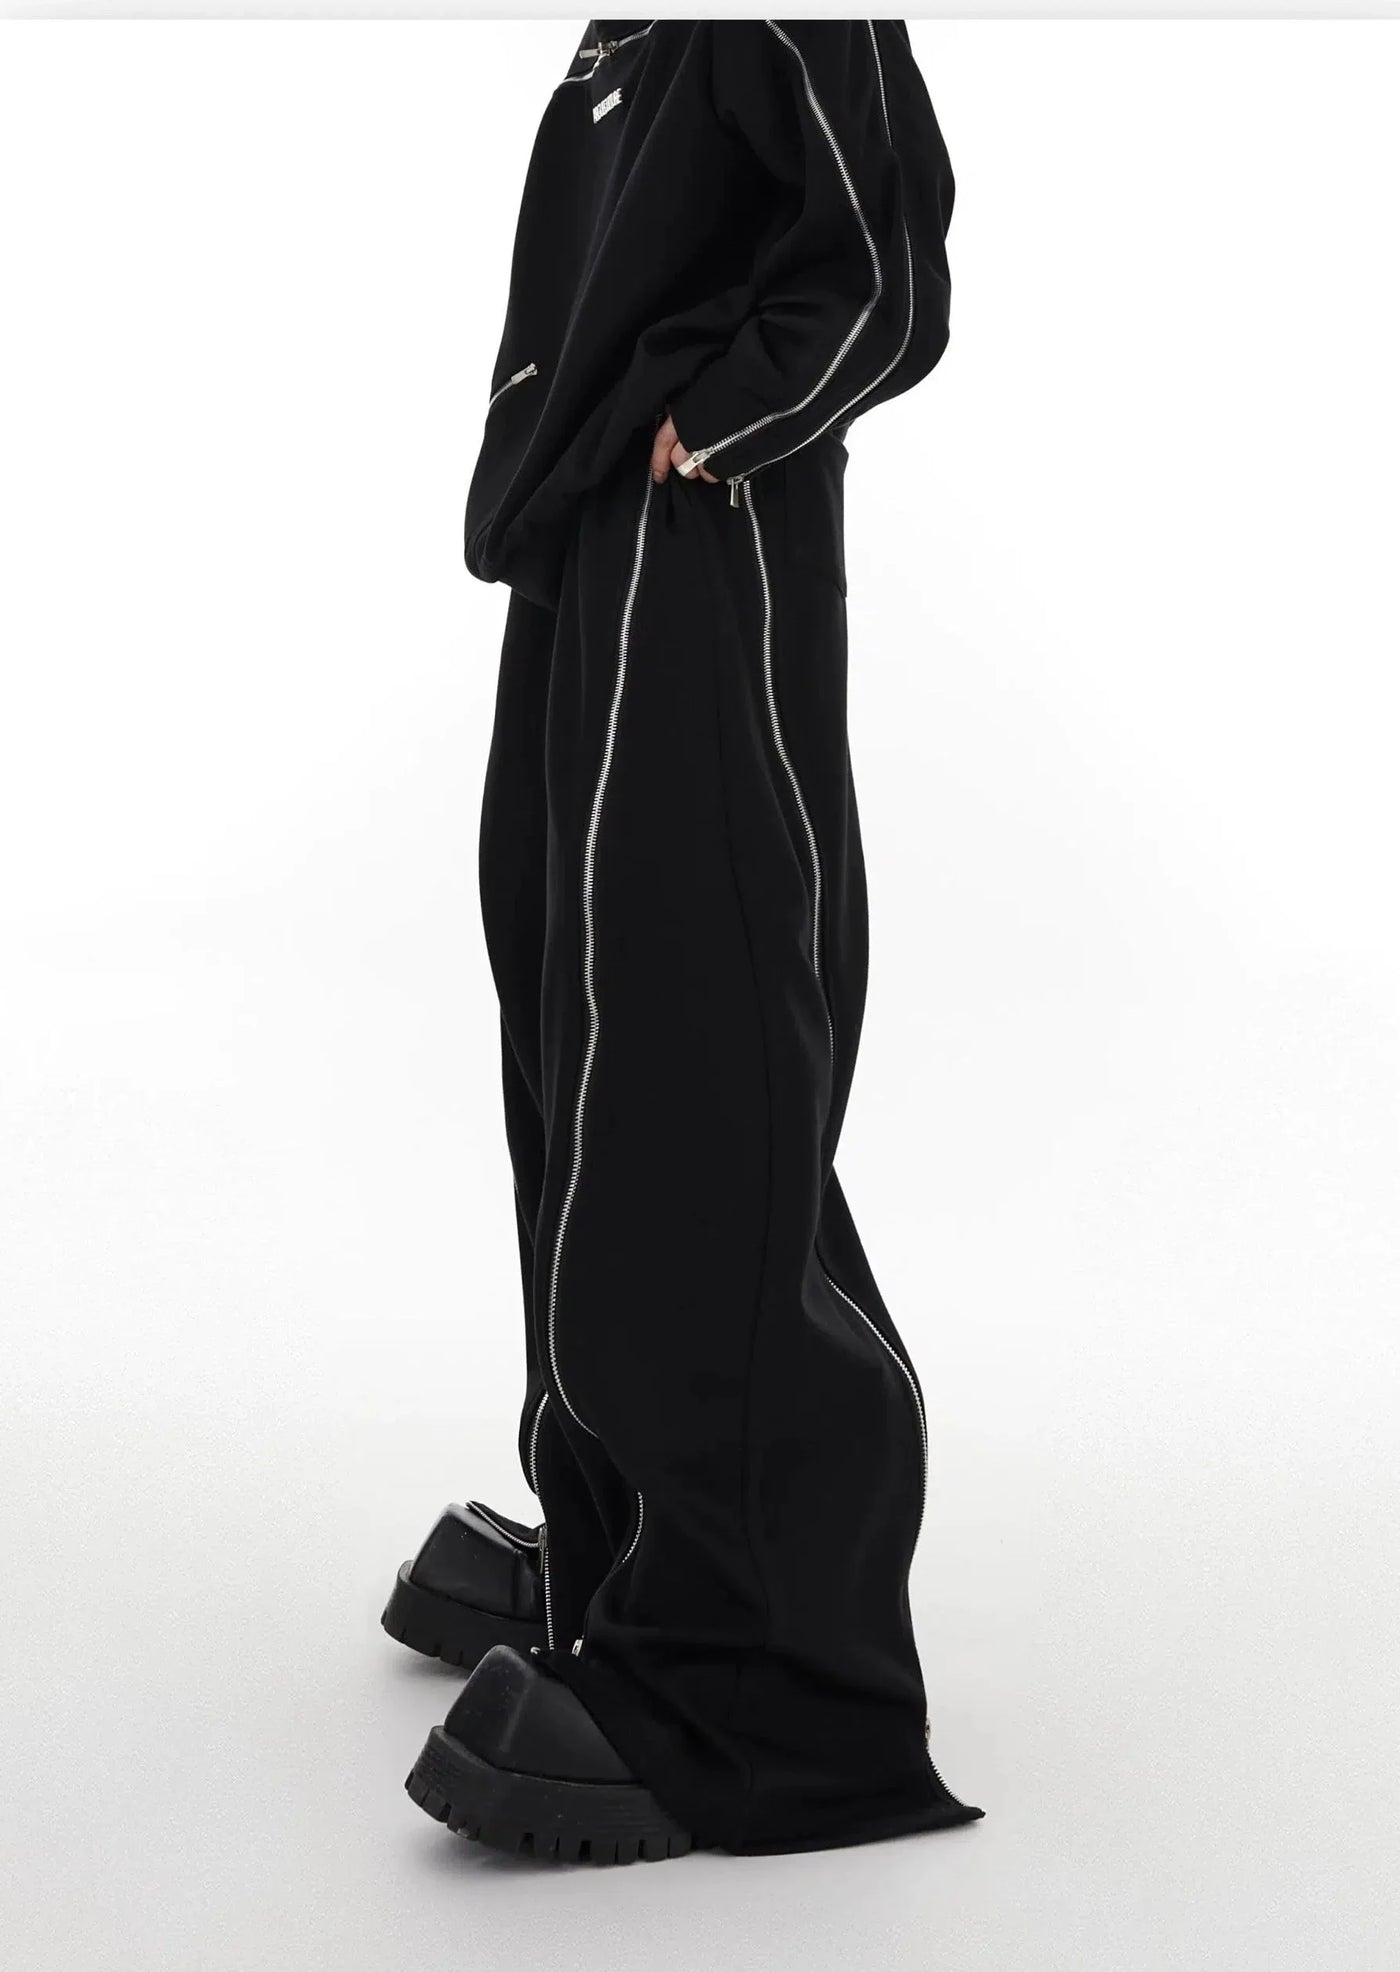 Zipper Outline Crewneck & Pants Set Korean Street Fashion Clothing Set By Argue Culture Shop Online at OH Vault